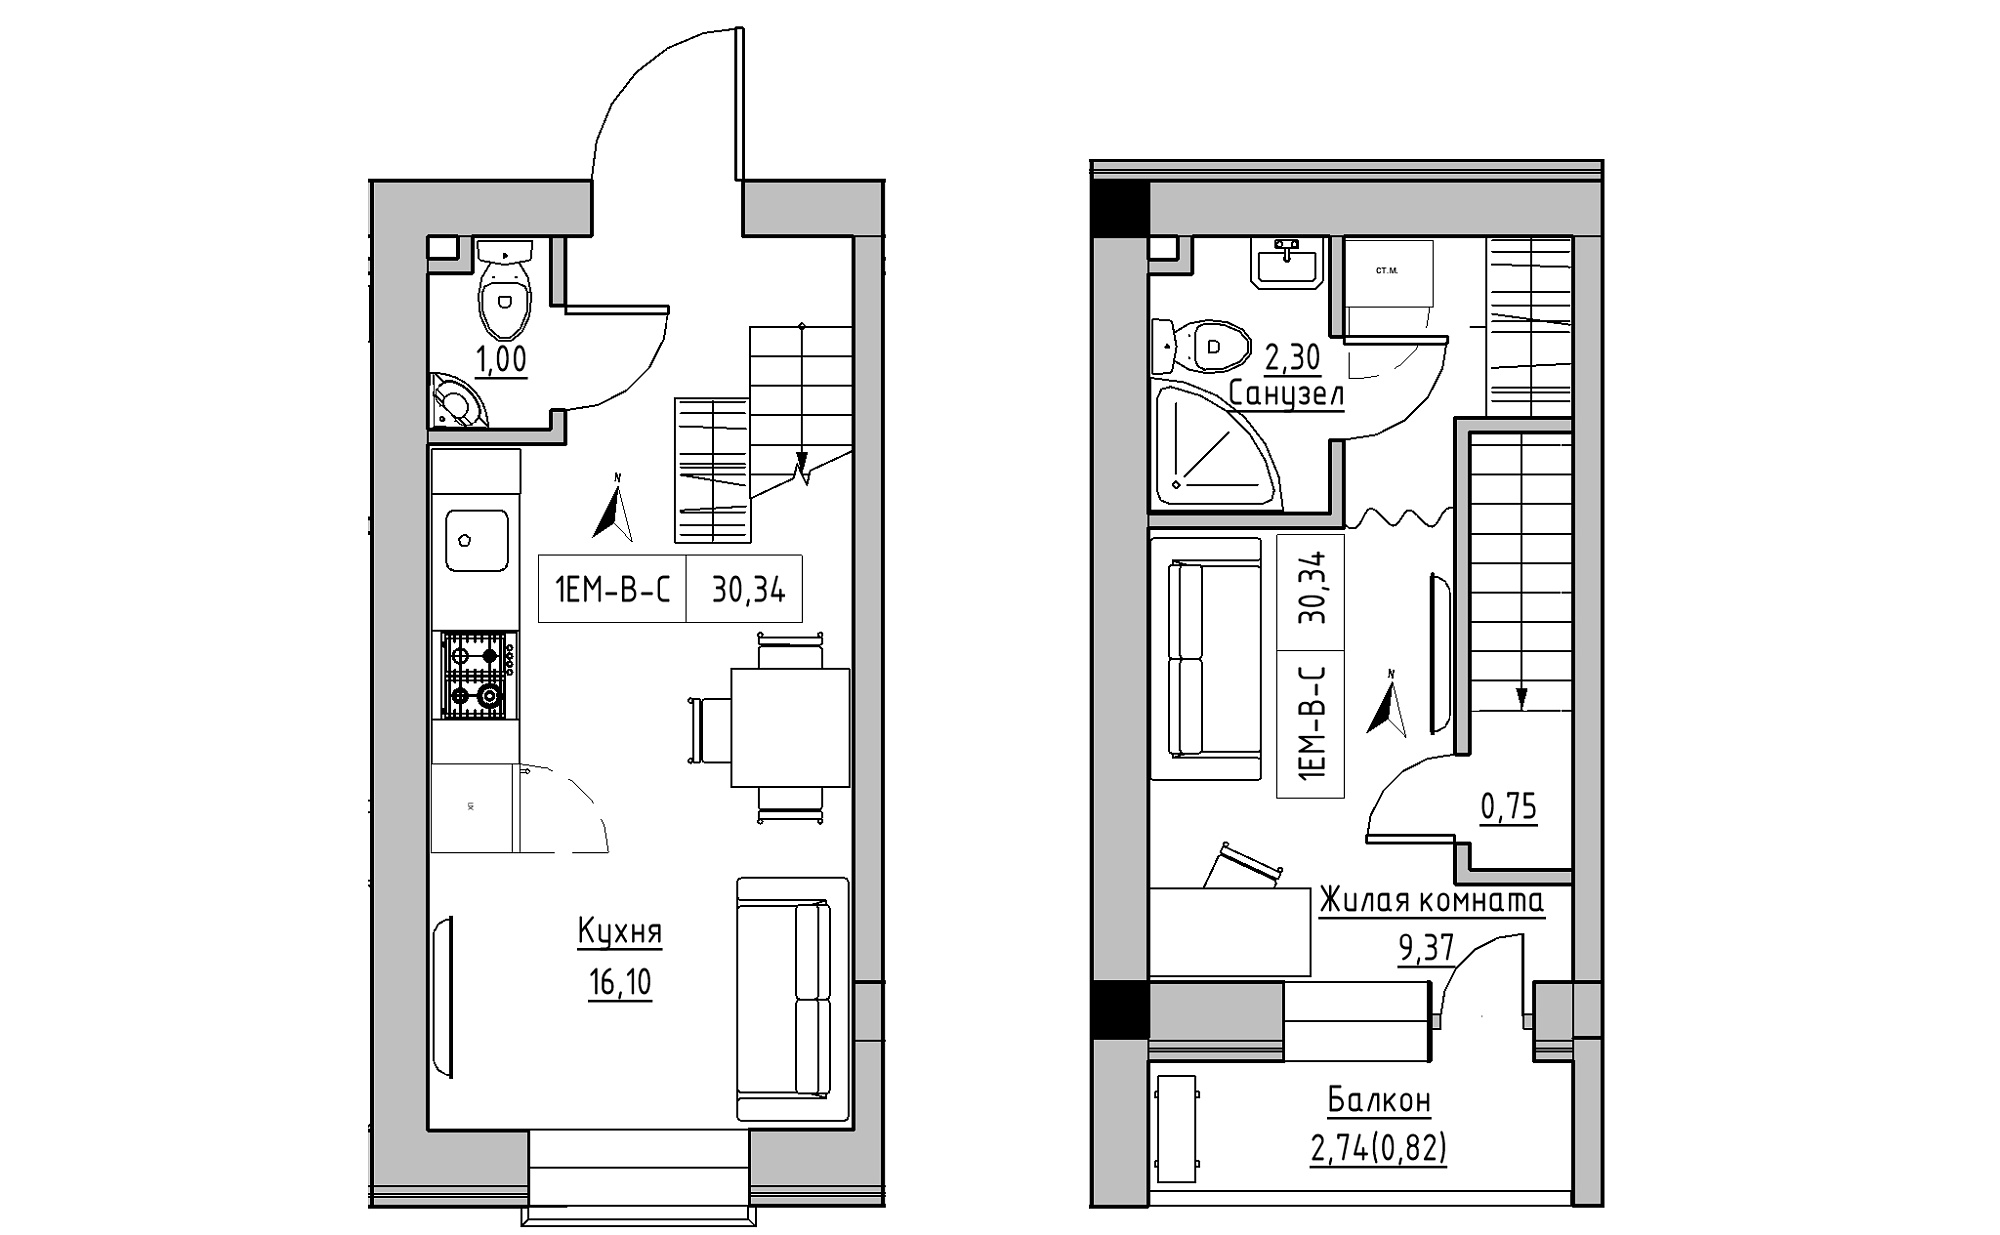 Planning 2-lvl flats area 30.34m2, KS-023-05/0010.